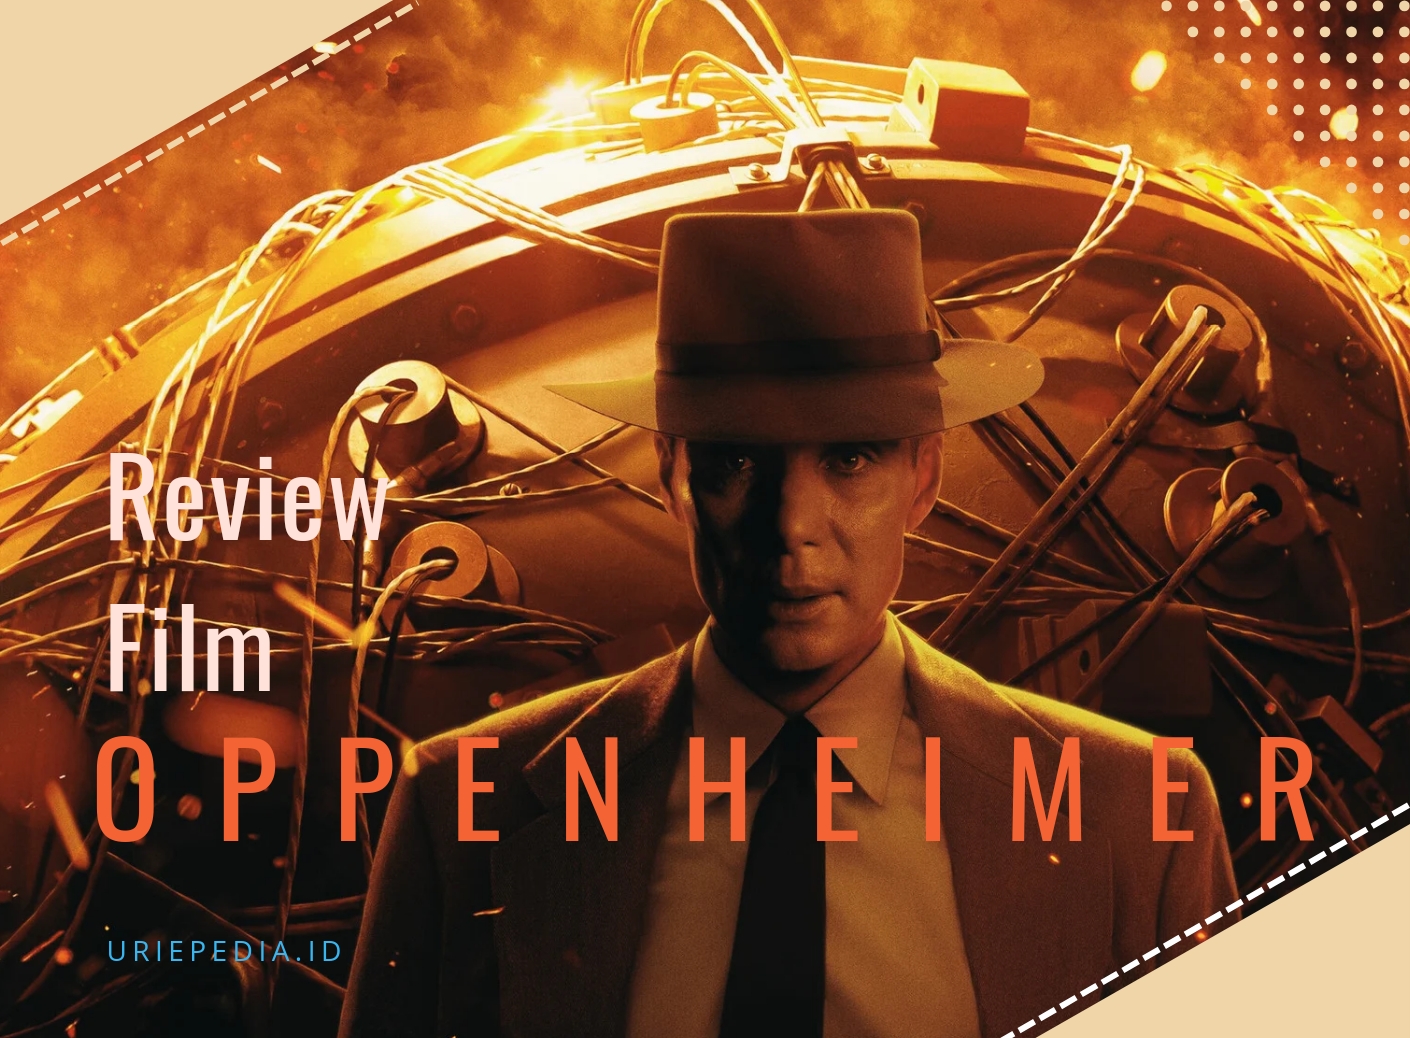 Uriepedia - Review Film Oppenheimer sang pencipta bom atom pada Perang Dunia II